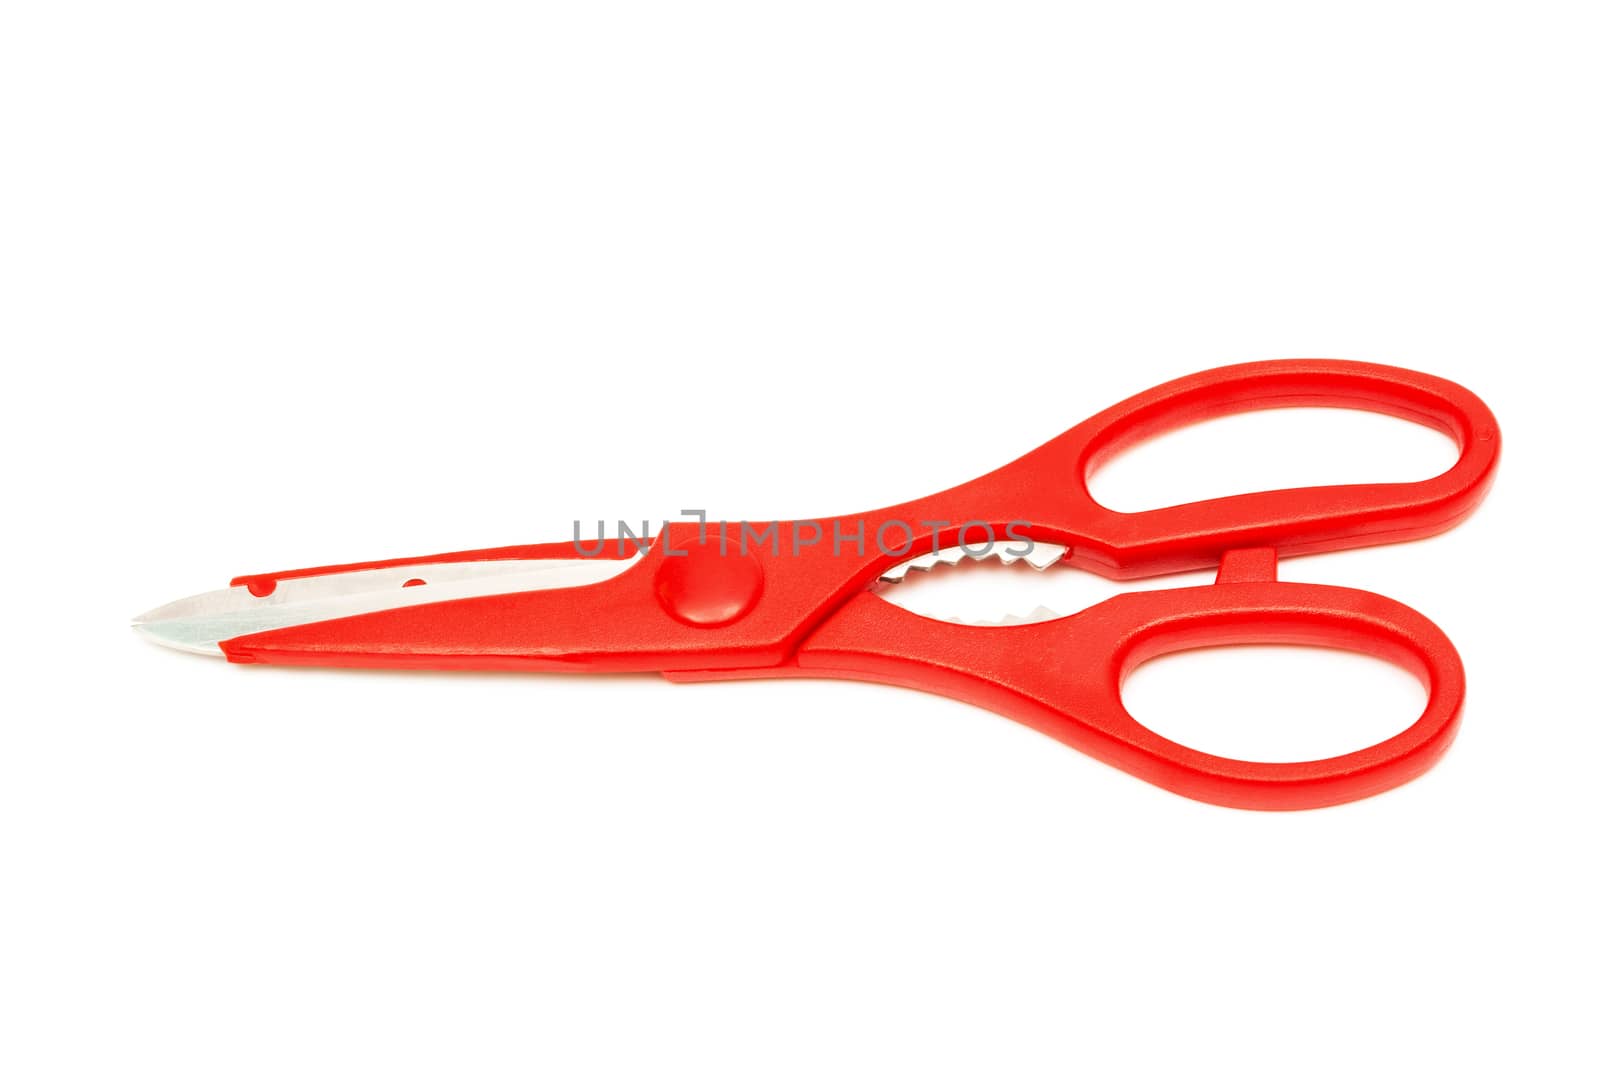 Modern kitchen scissors on a white background